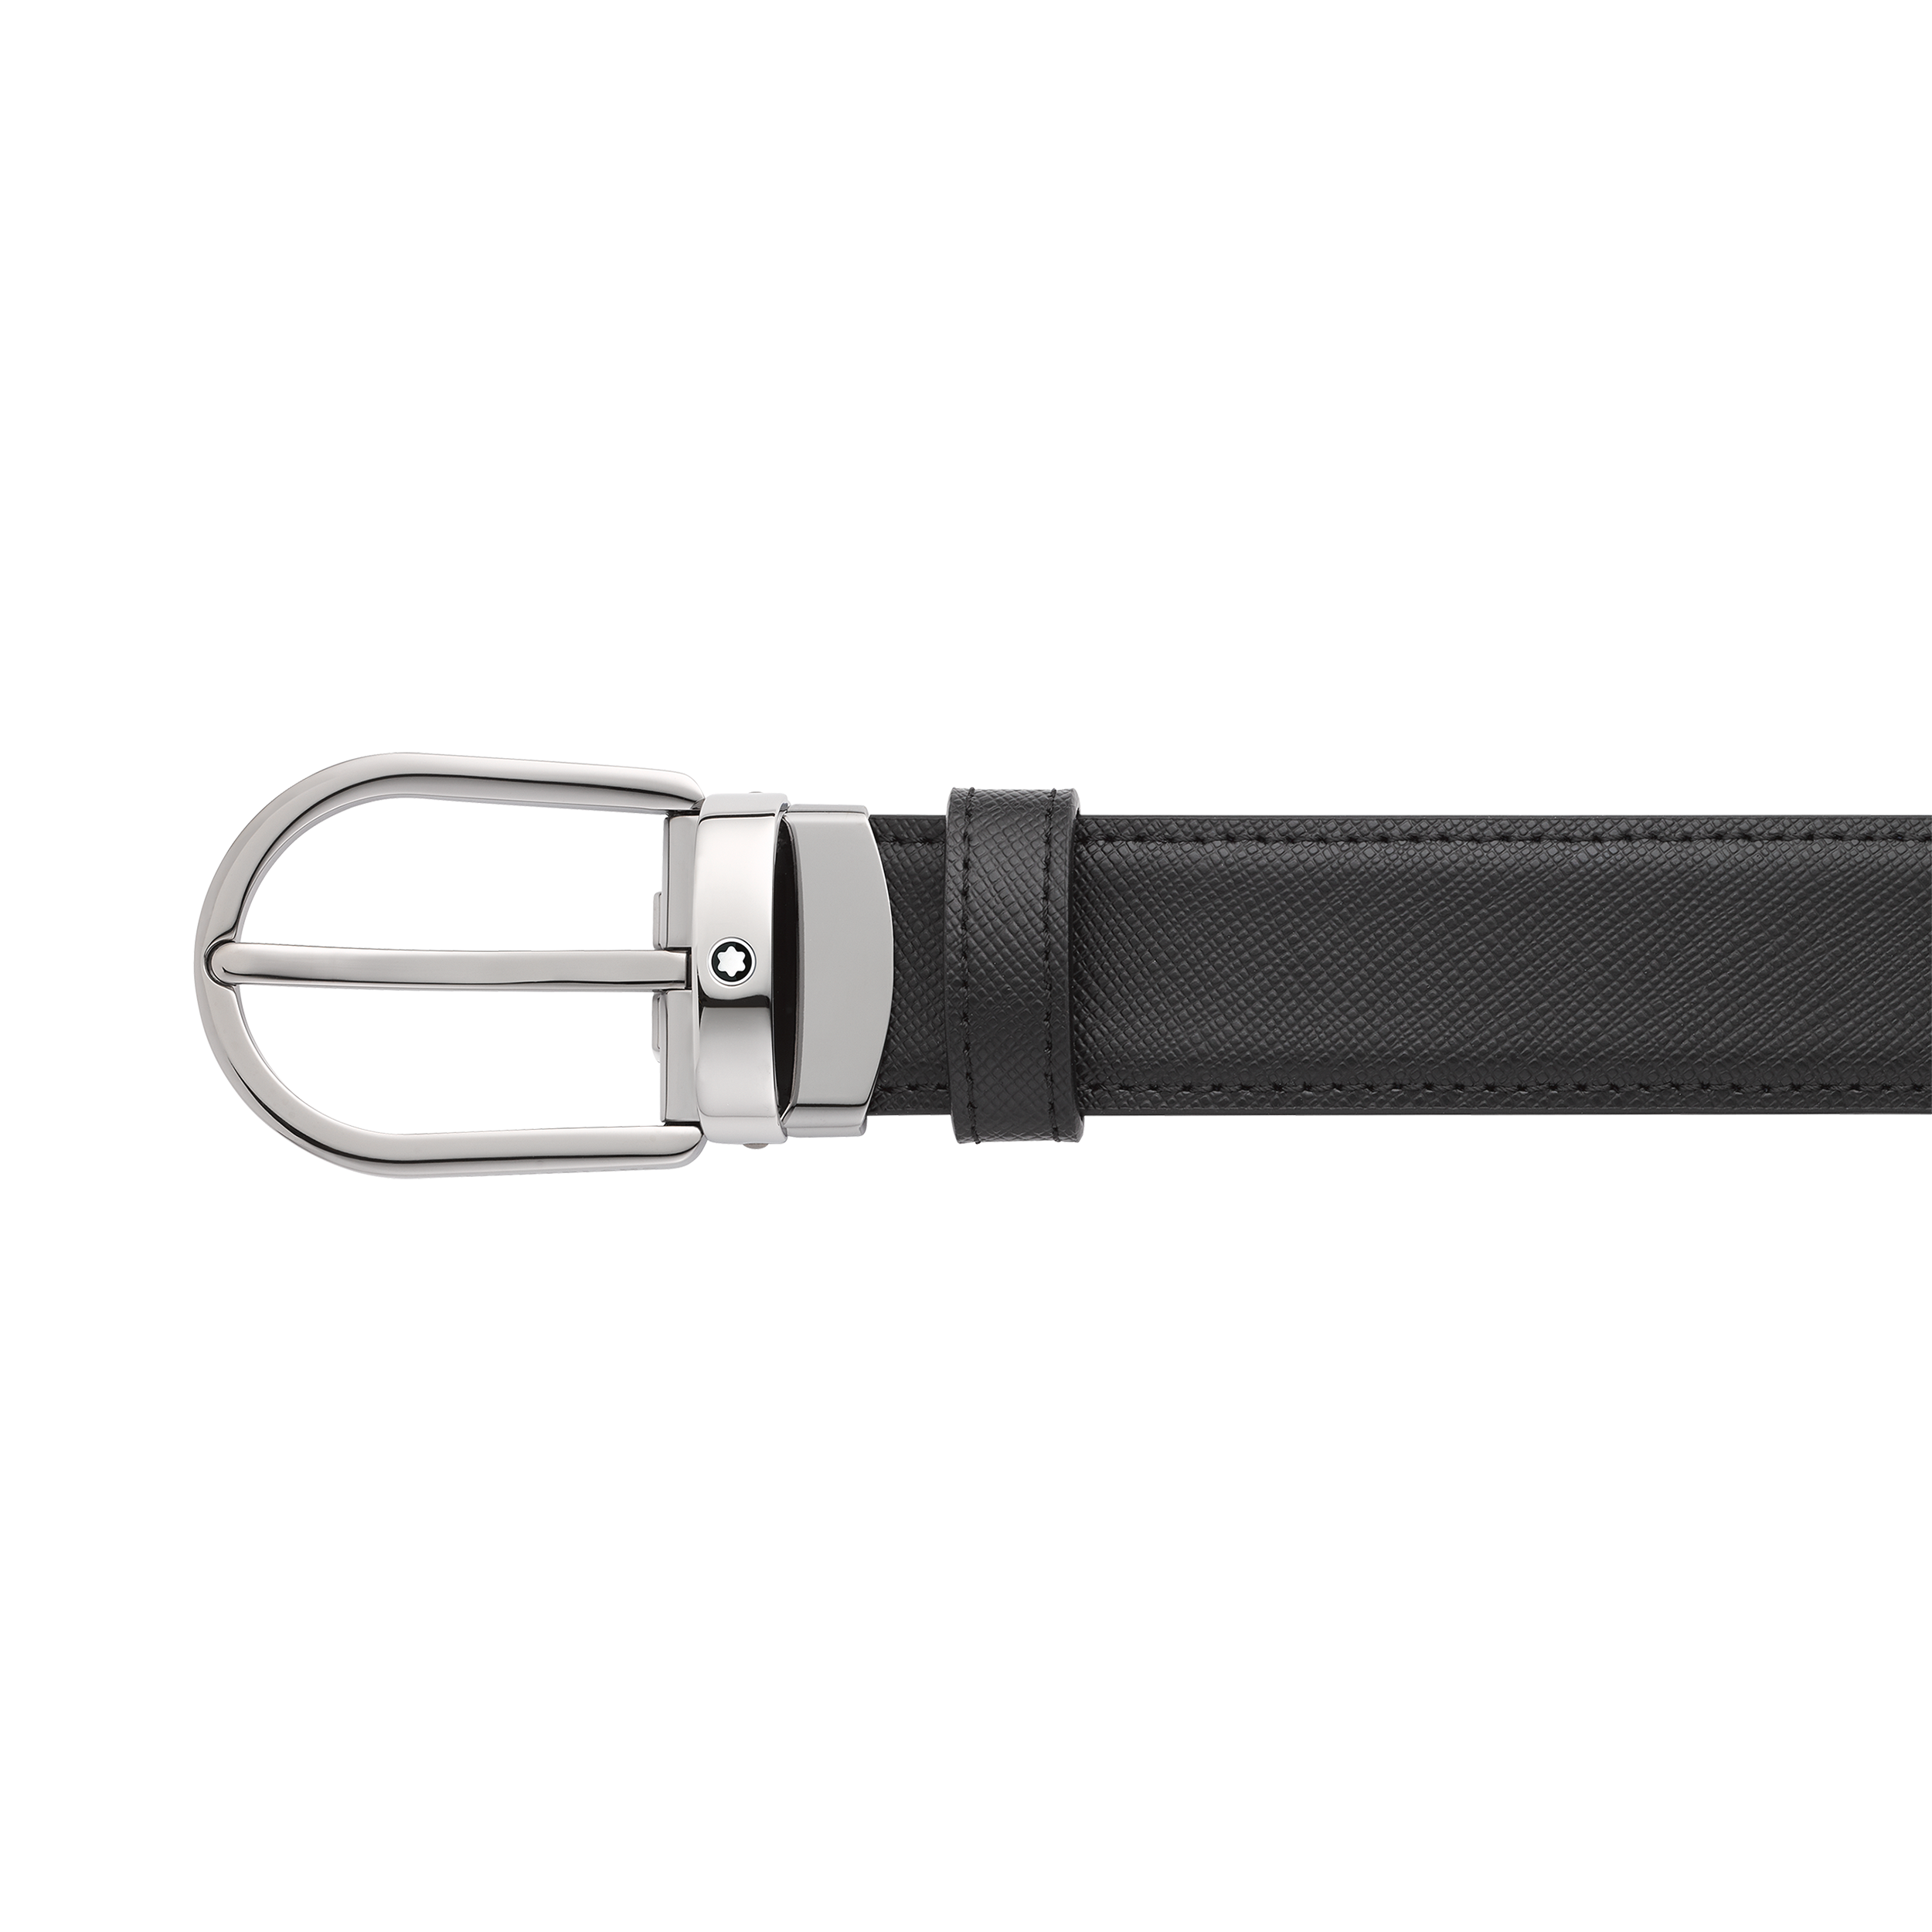 Horseshoe buckle black/blue 30 mm reversible leather belt, image 3